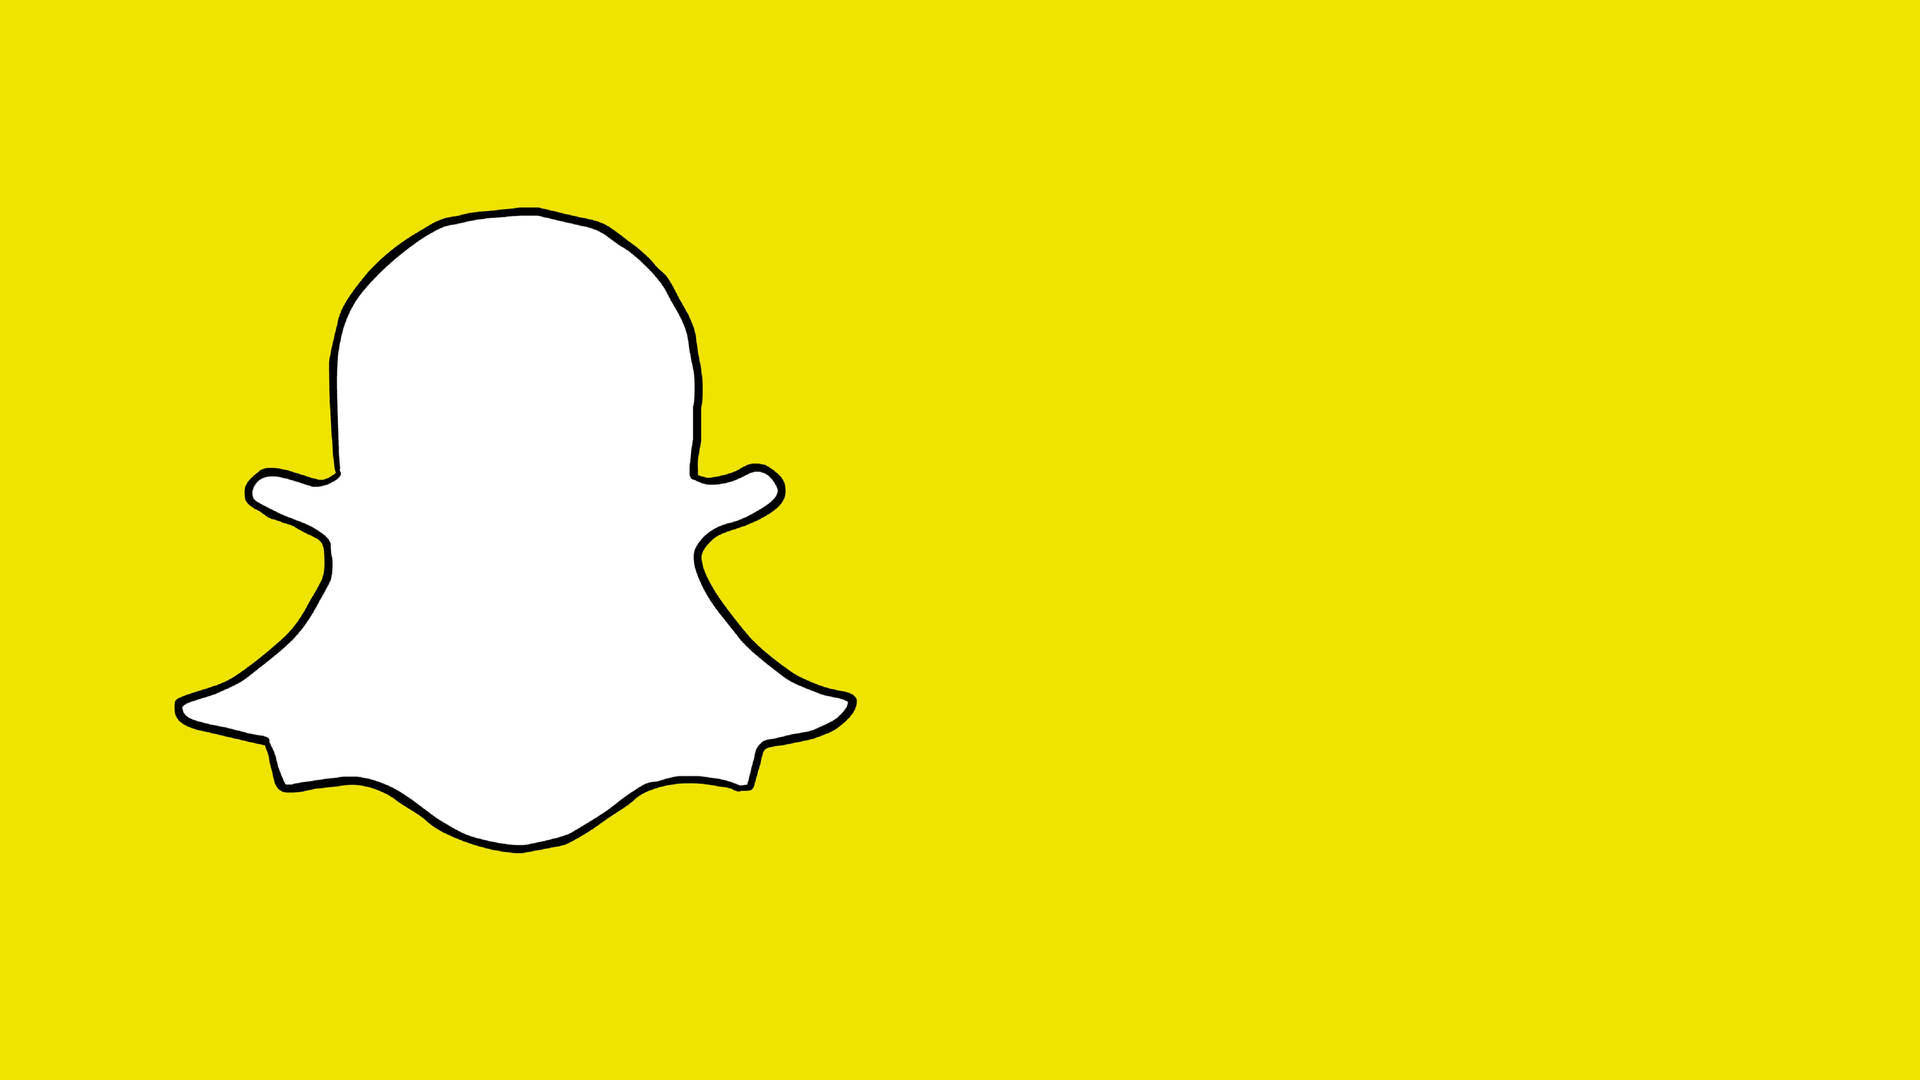 Espaciopara El Logo De Snapchat. Fondo de pantalla